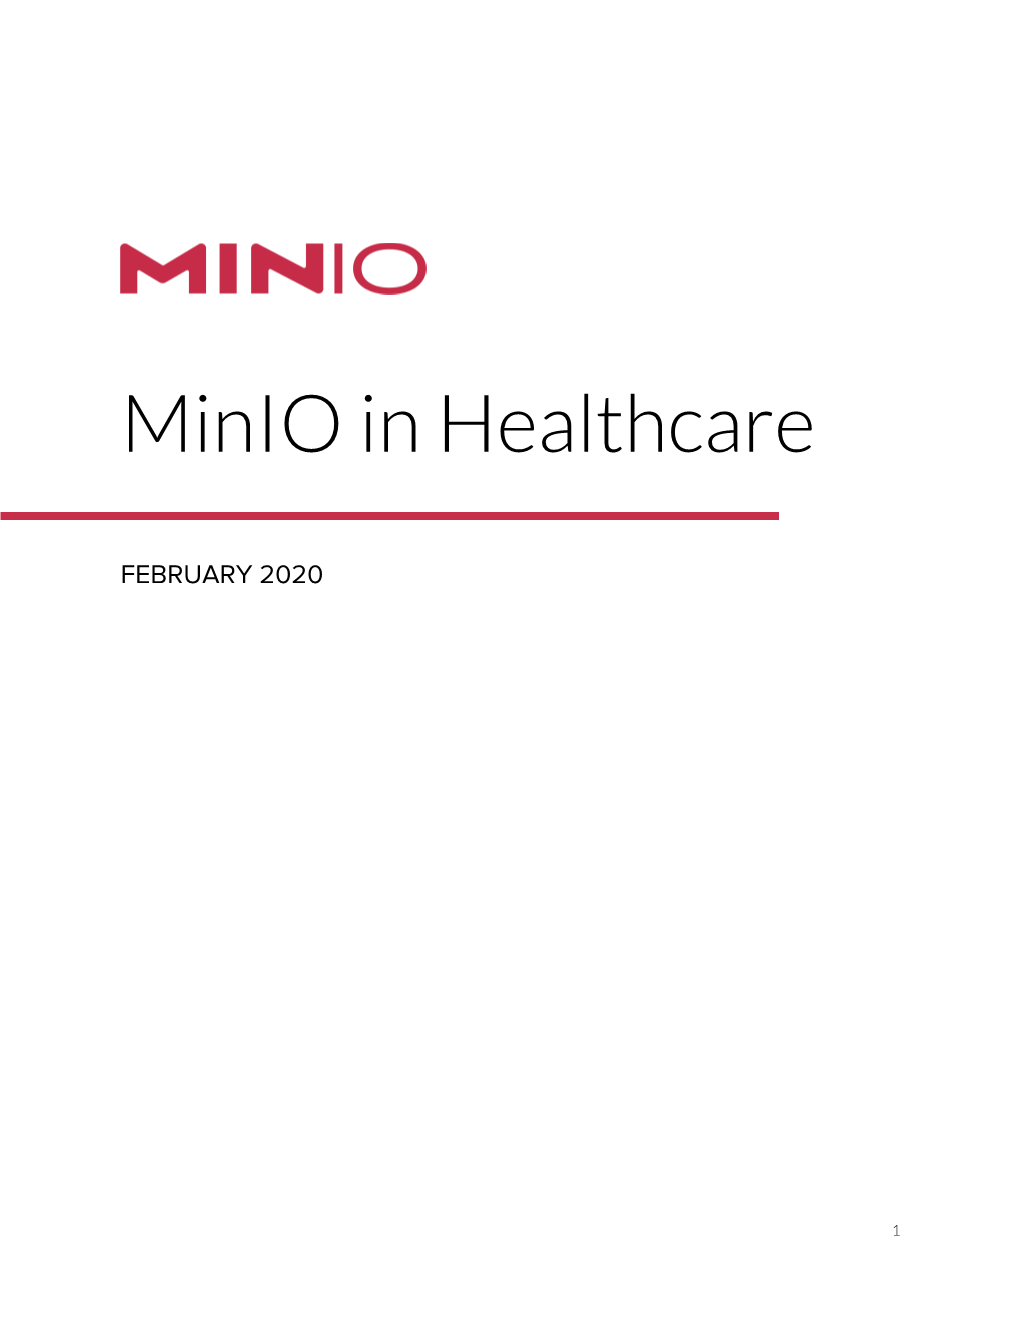 Minio in Healthcare